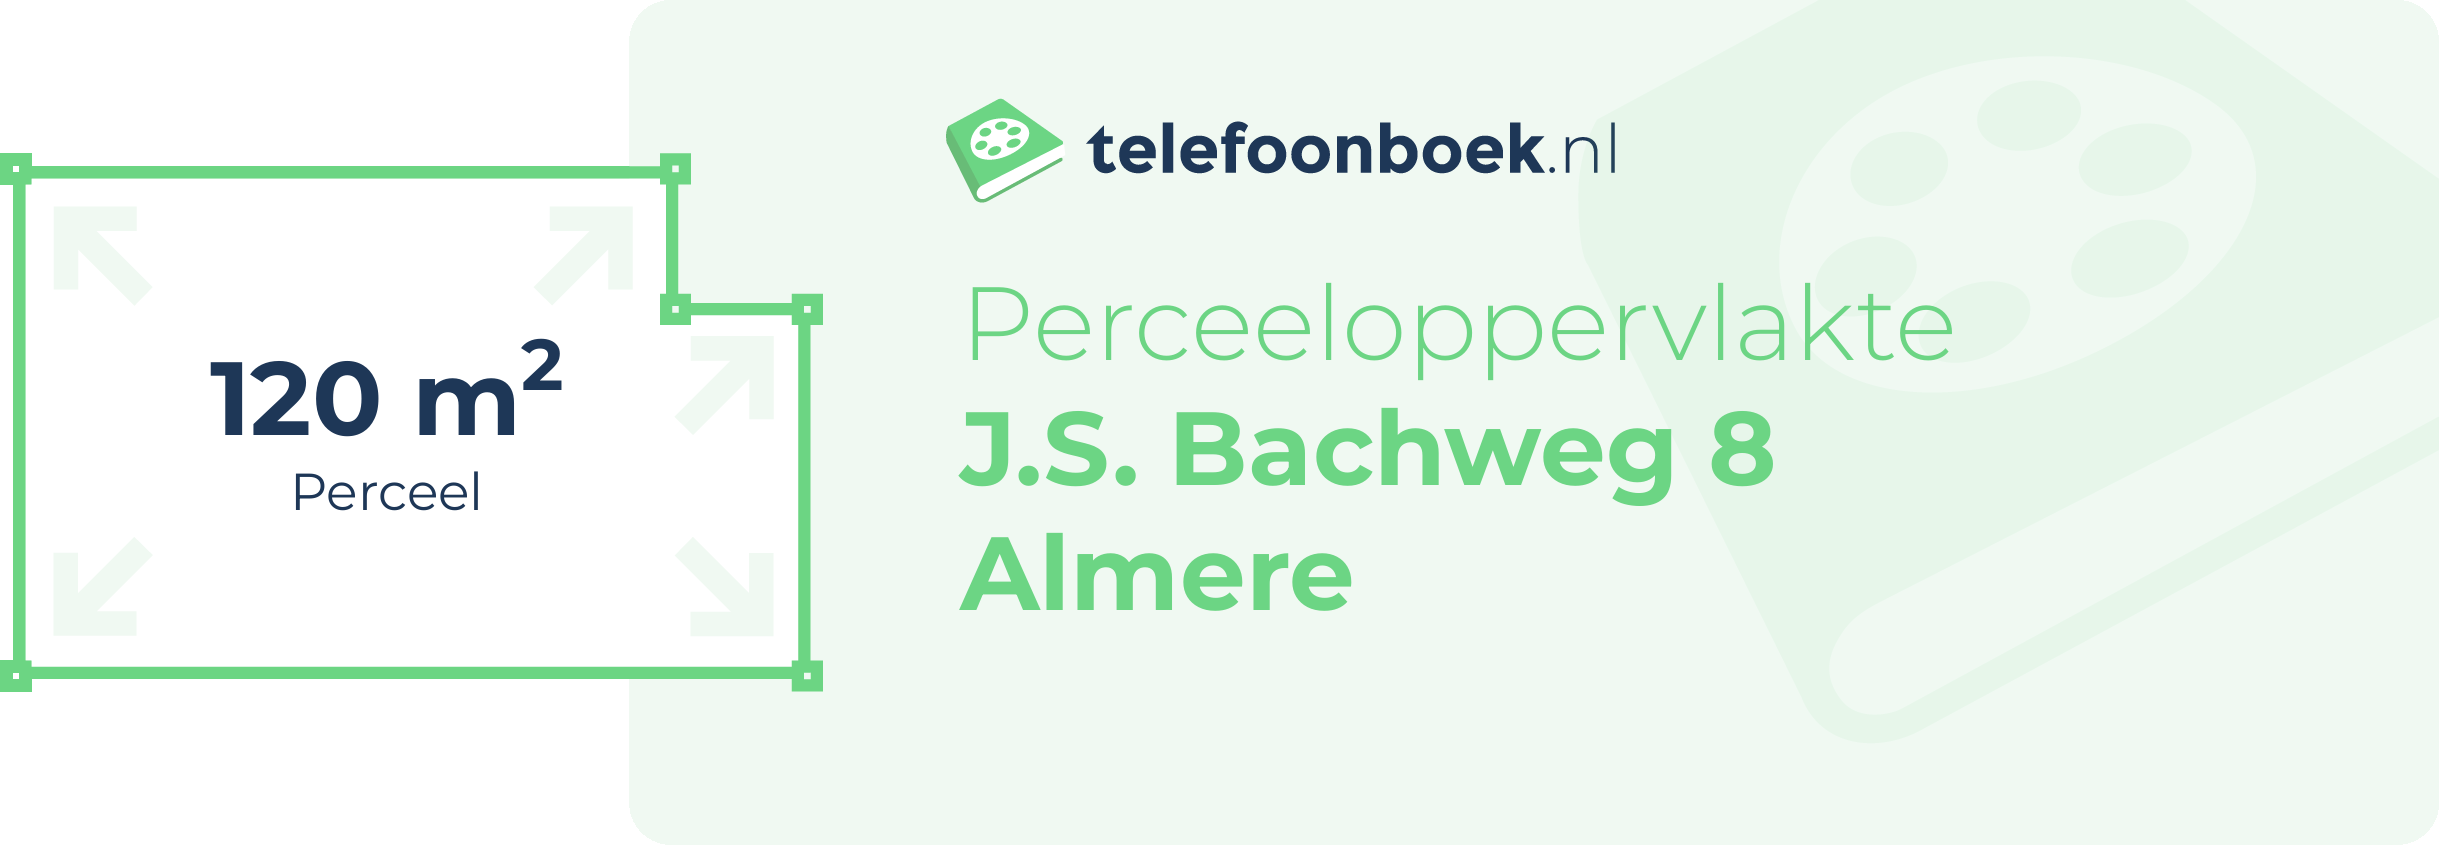 Perceeloppervlakte J.S. Bachweg 8 Almere